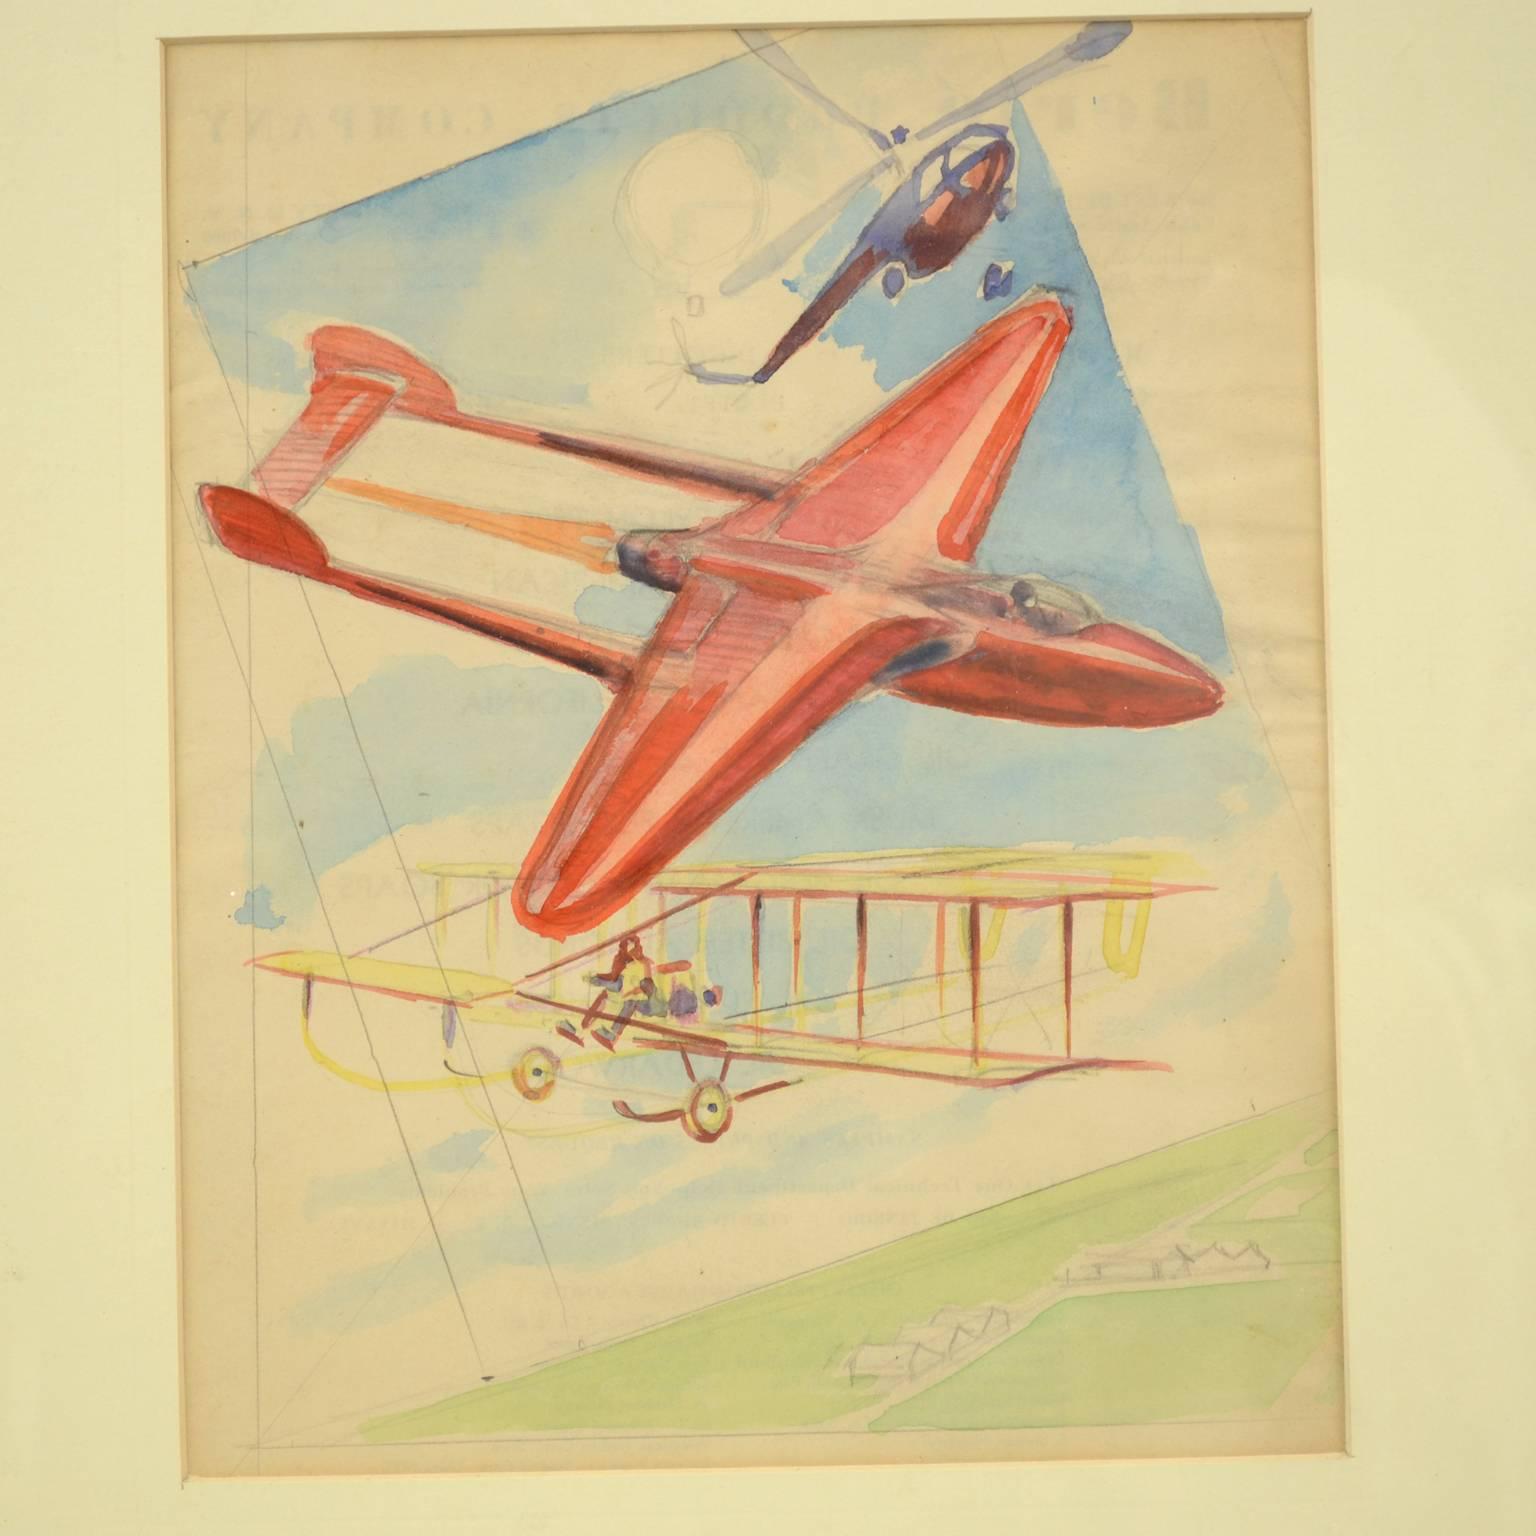 Esquisse préparatoire, aquarelle, d'une affiche sur le concours aéronautique Gran Premio Milano du 19 septembre 1948, représentant trois types de machines volantes, réalisée par Riccardo Cavigioli. Cadre compris 38 x 1,7 x 43 cm - 14.96 x 0.66 x